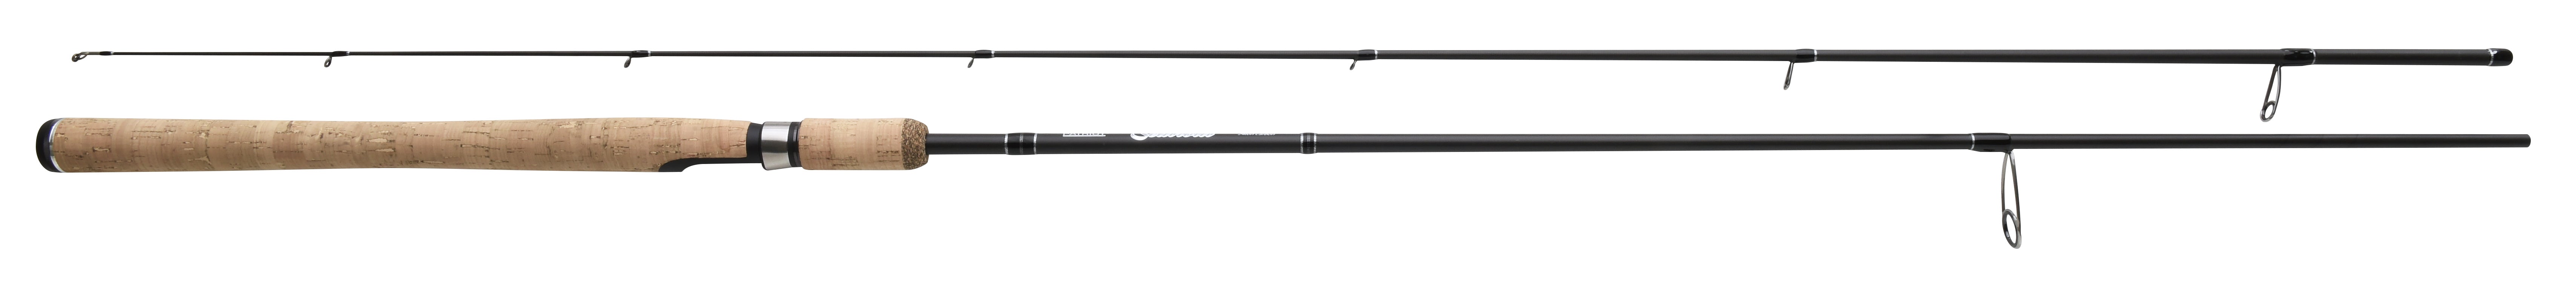 Patriot Seatrout rod, 8' 244cm, 10-30g, 2-piece